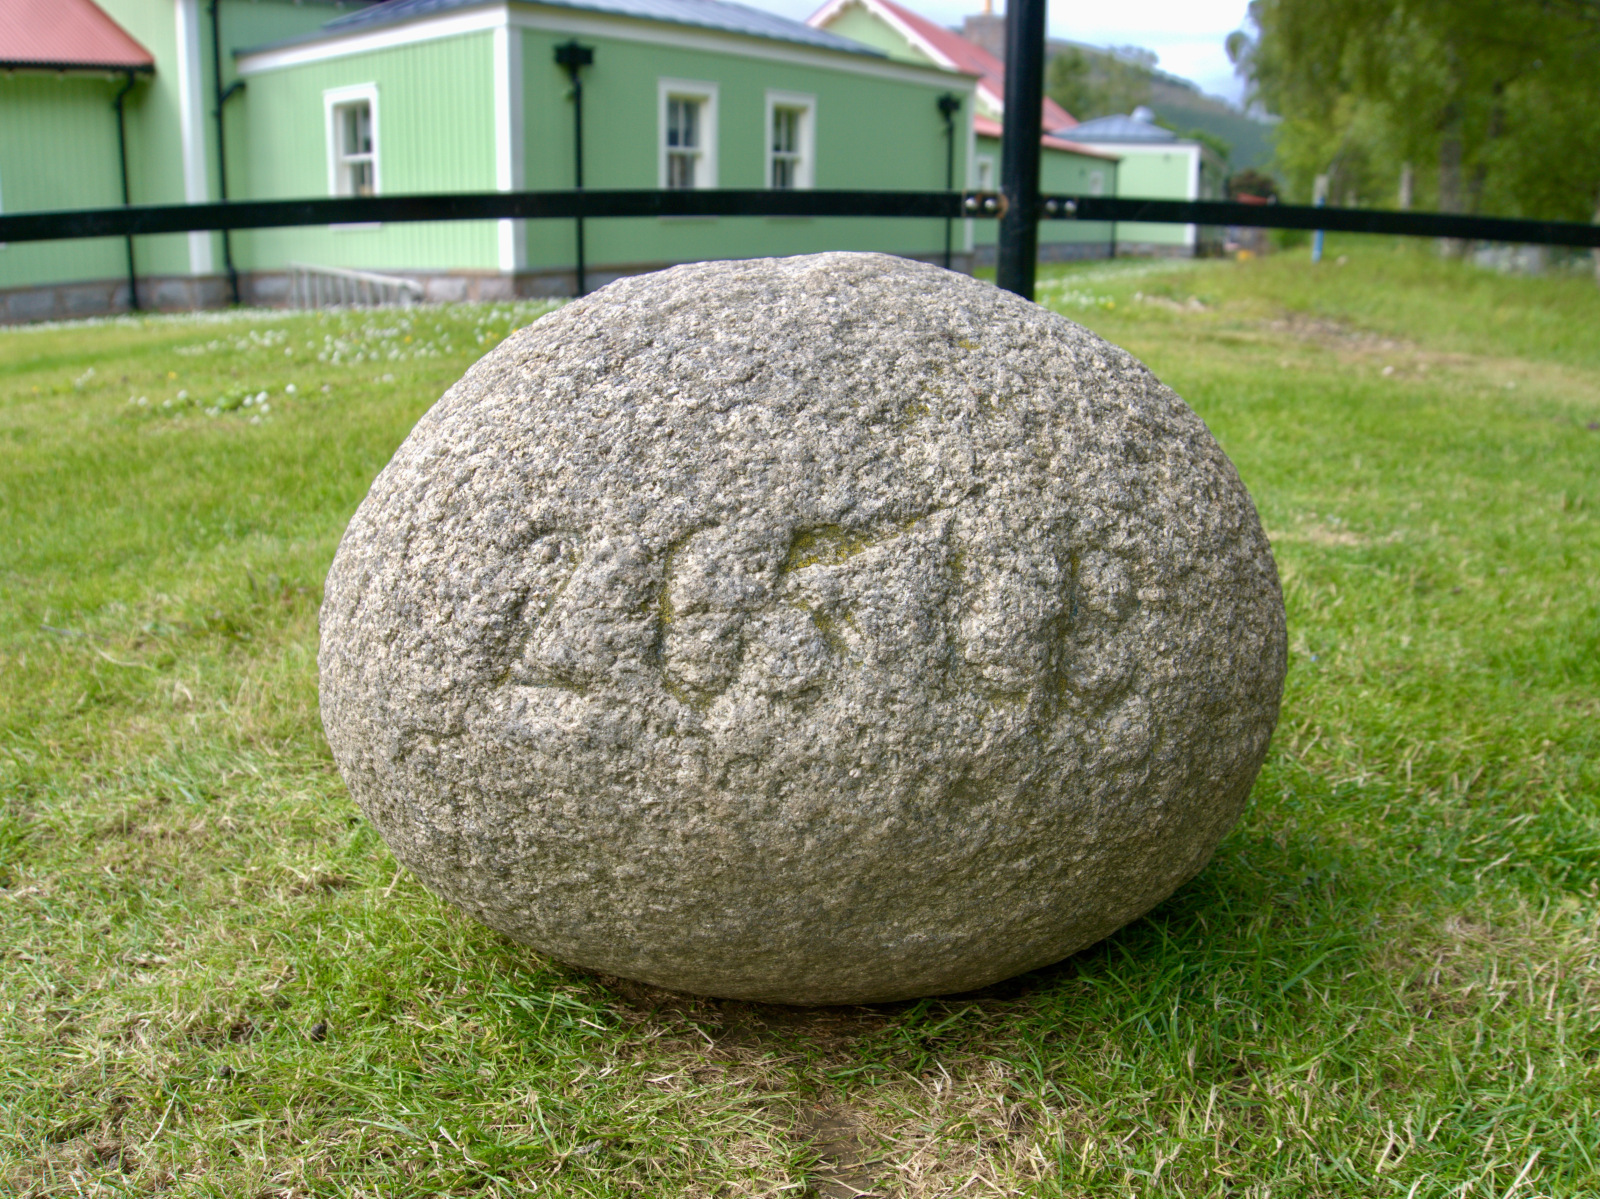 Inver Stone lead image.